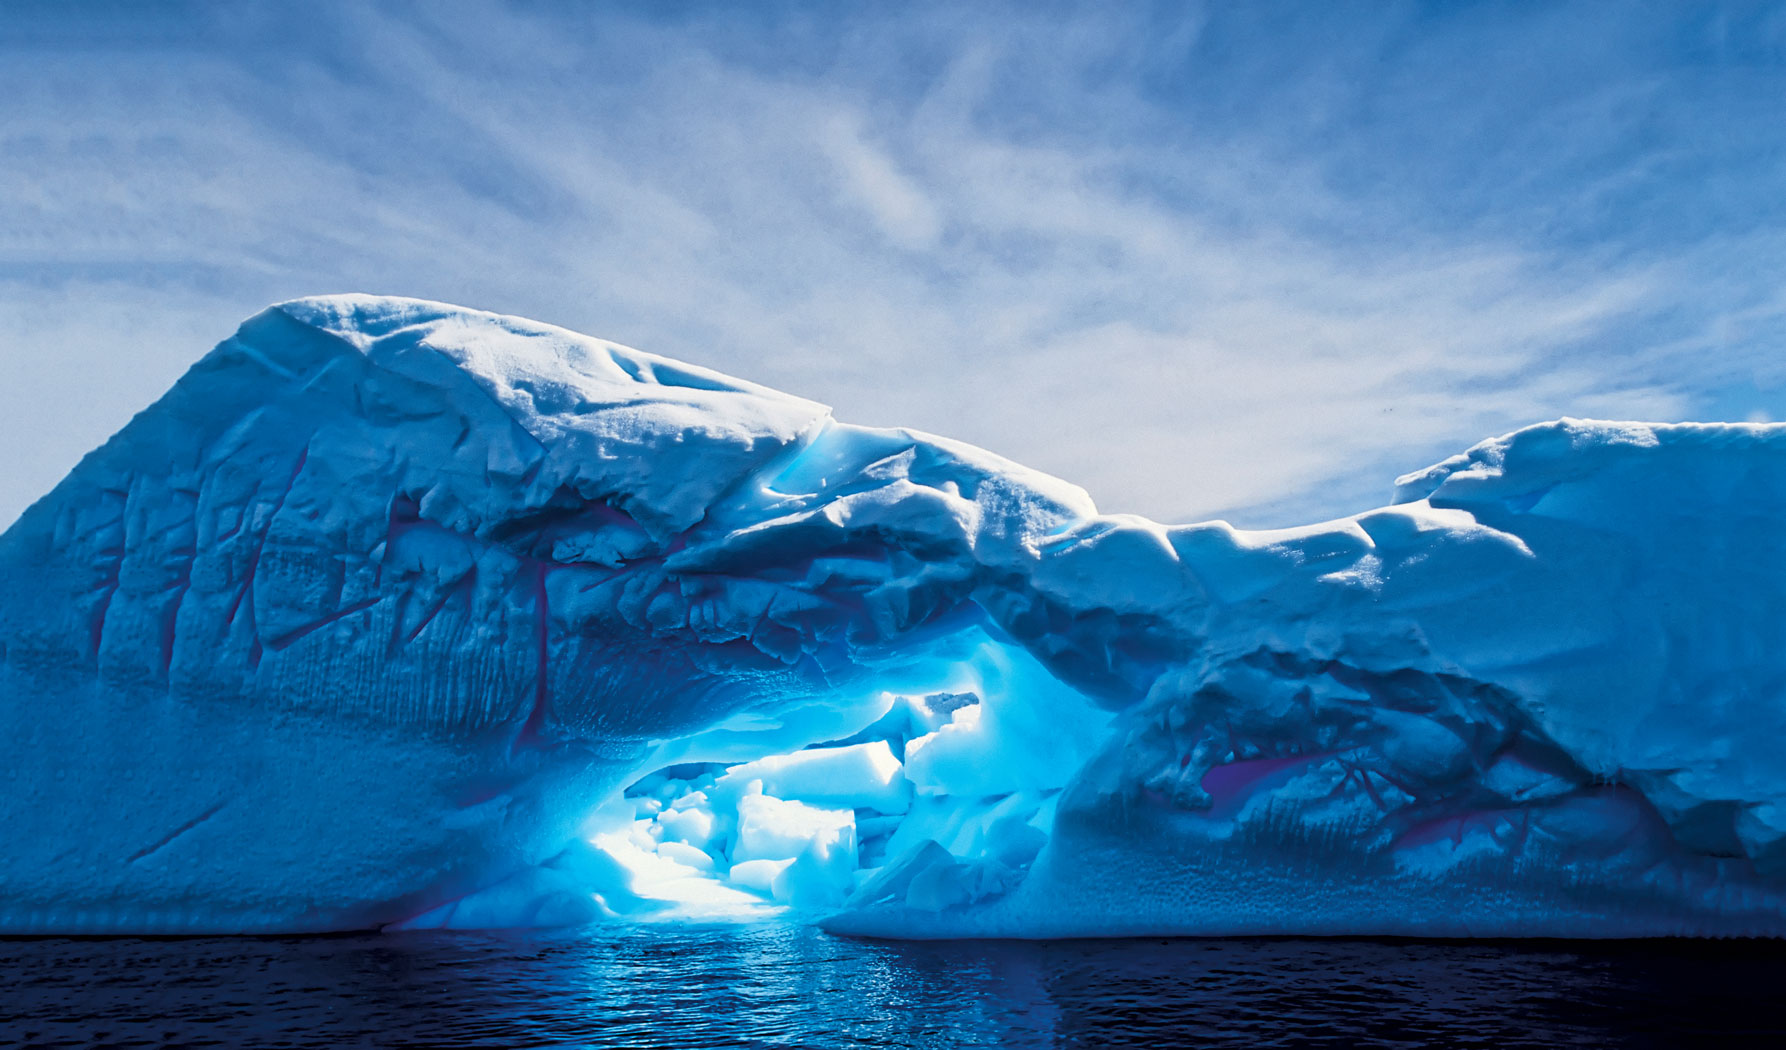 Jak Znika Antarktyda Czasza Coraz Mniejsza Polityka pl